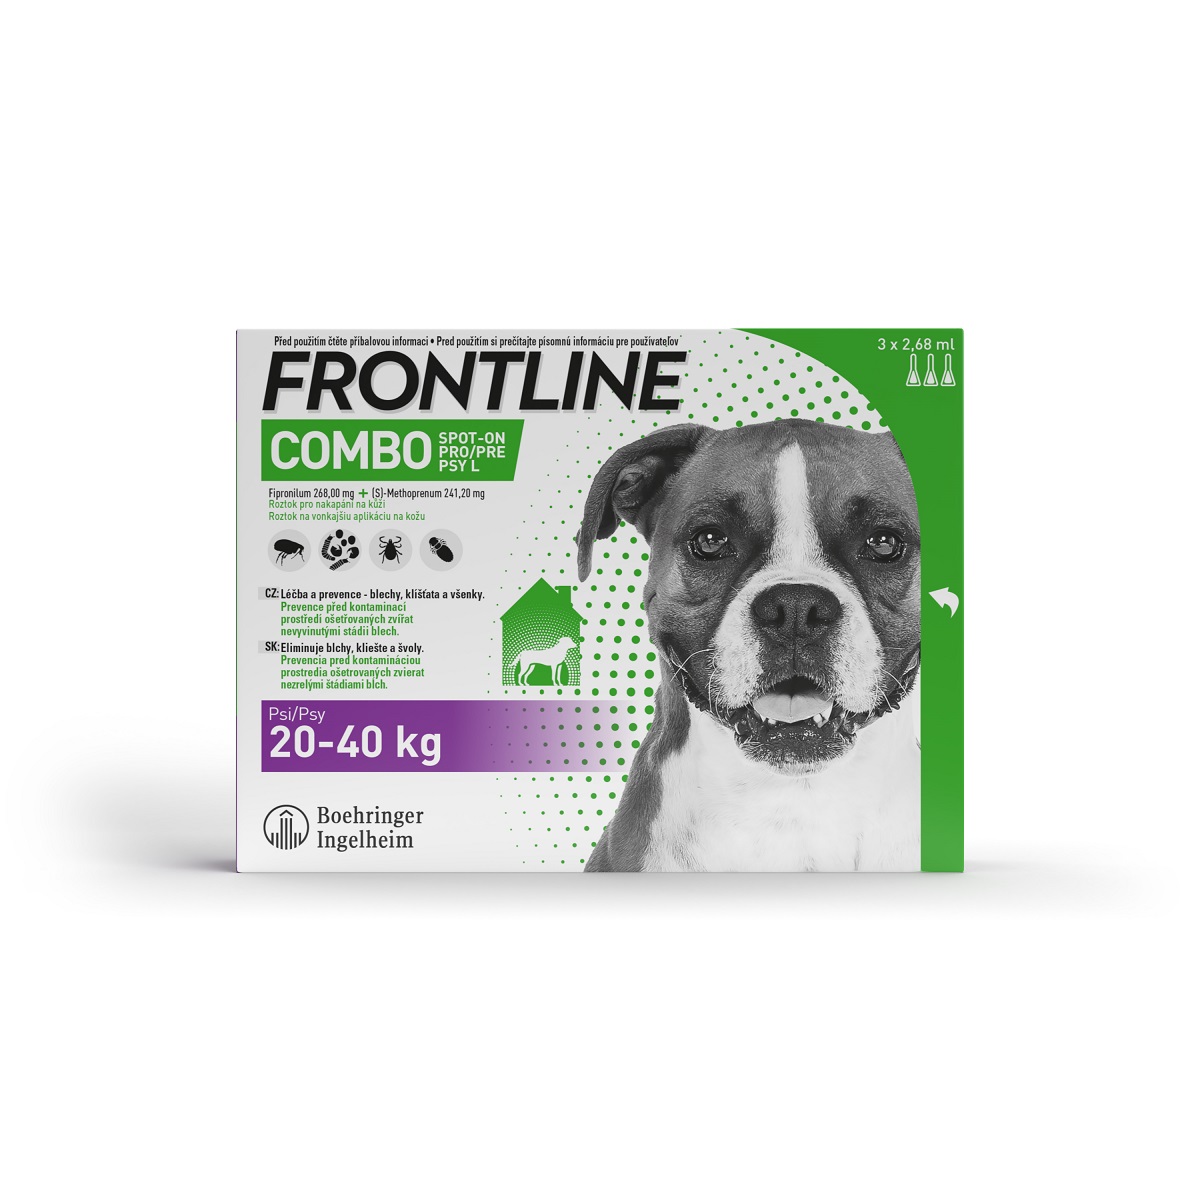 FRONTLINE Combo Spot-On Dog L 3x2,68ml 20-40kg